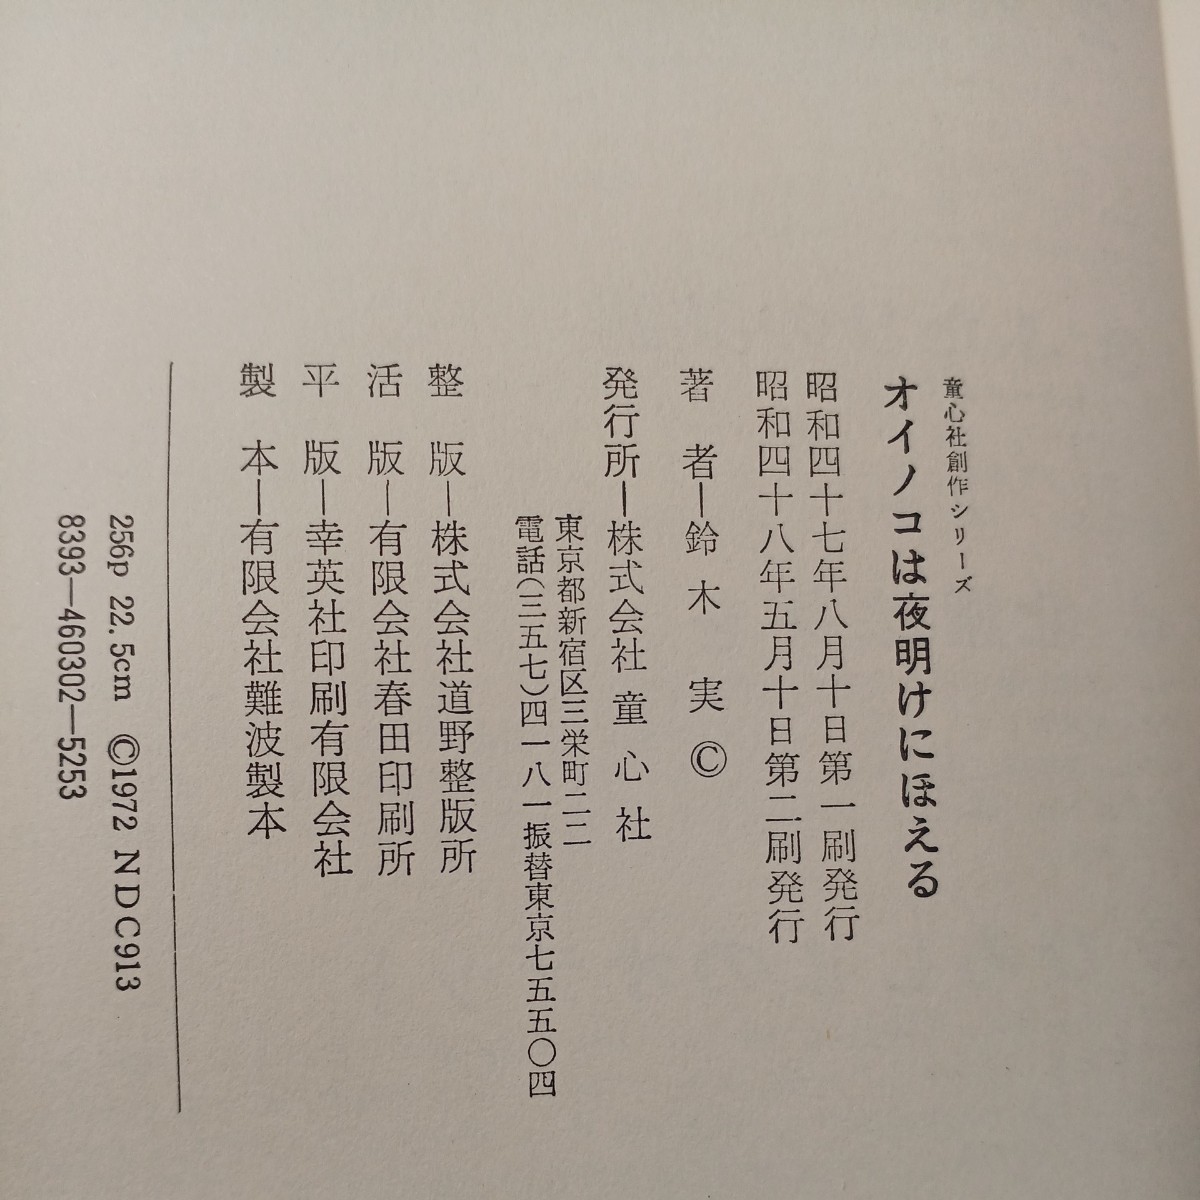 zaa-519♪オイノコは夜明けにほえる 　　鈴木実(著)　久米宏一(画) 　童心社（1973/5/10発売）